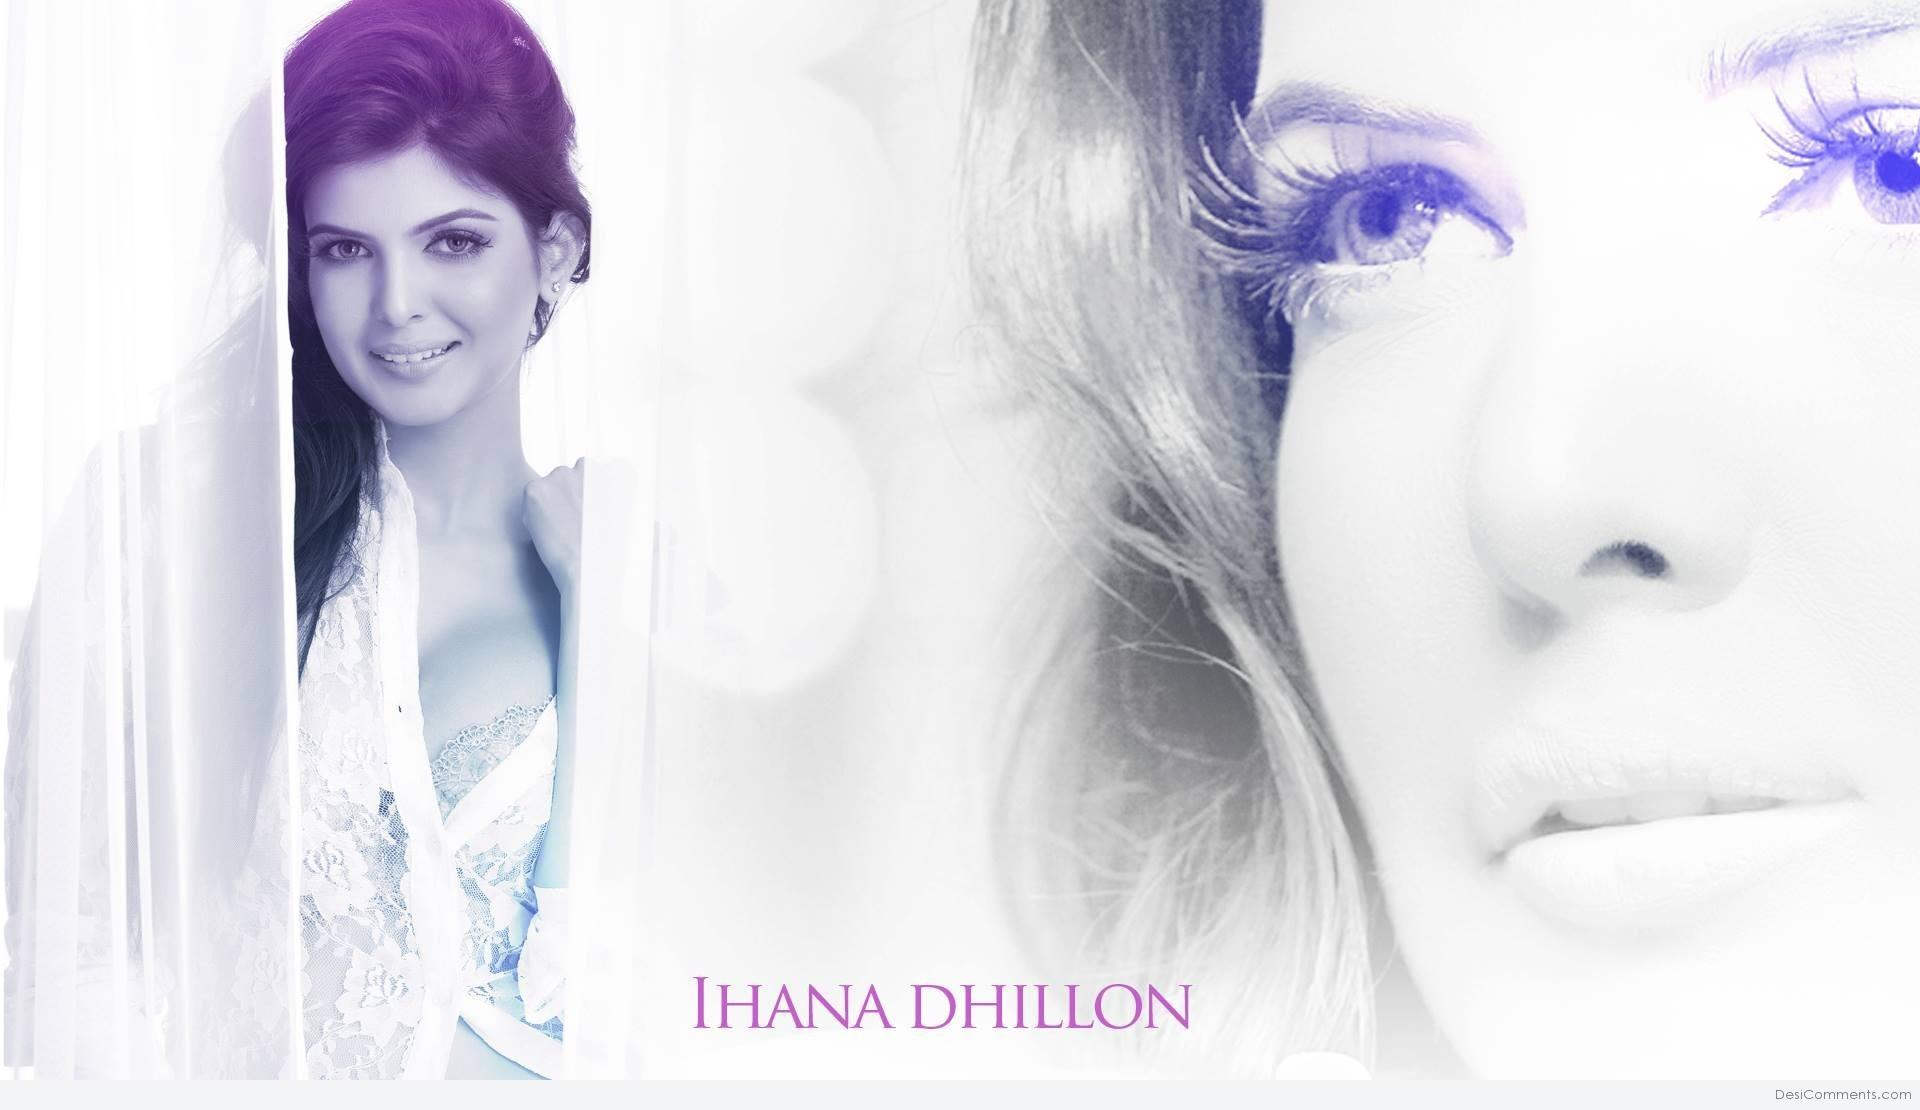 Model Ihana Dhillon